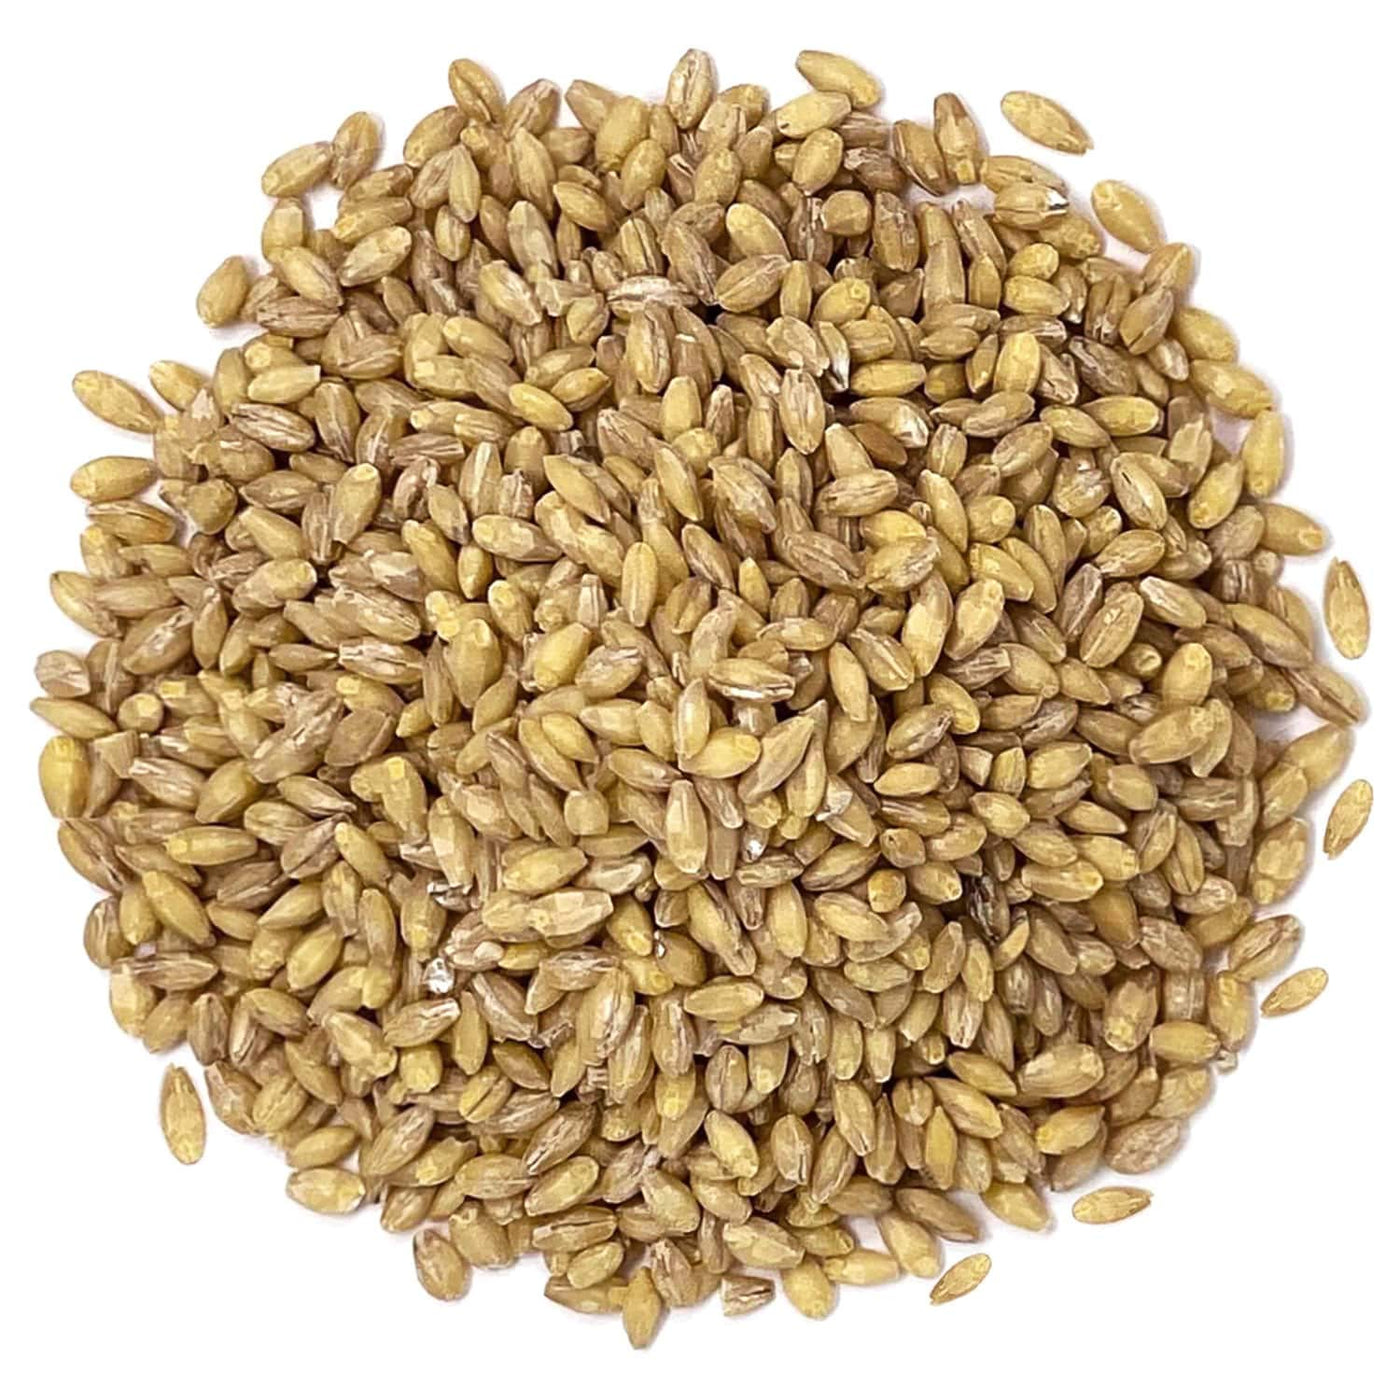 Organic Hulled Barley